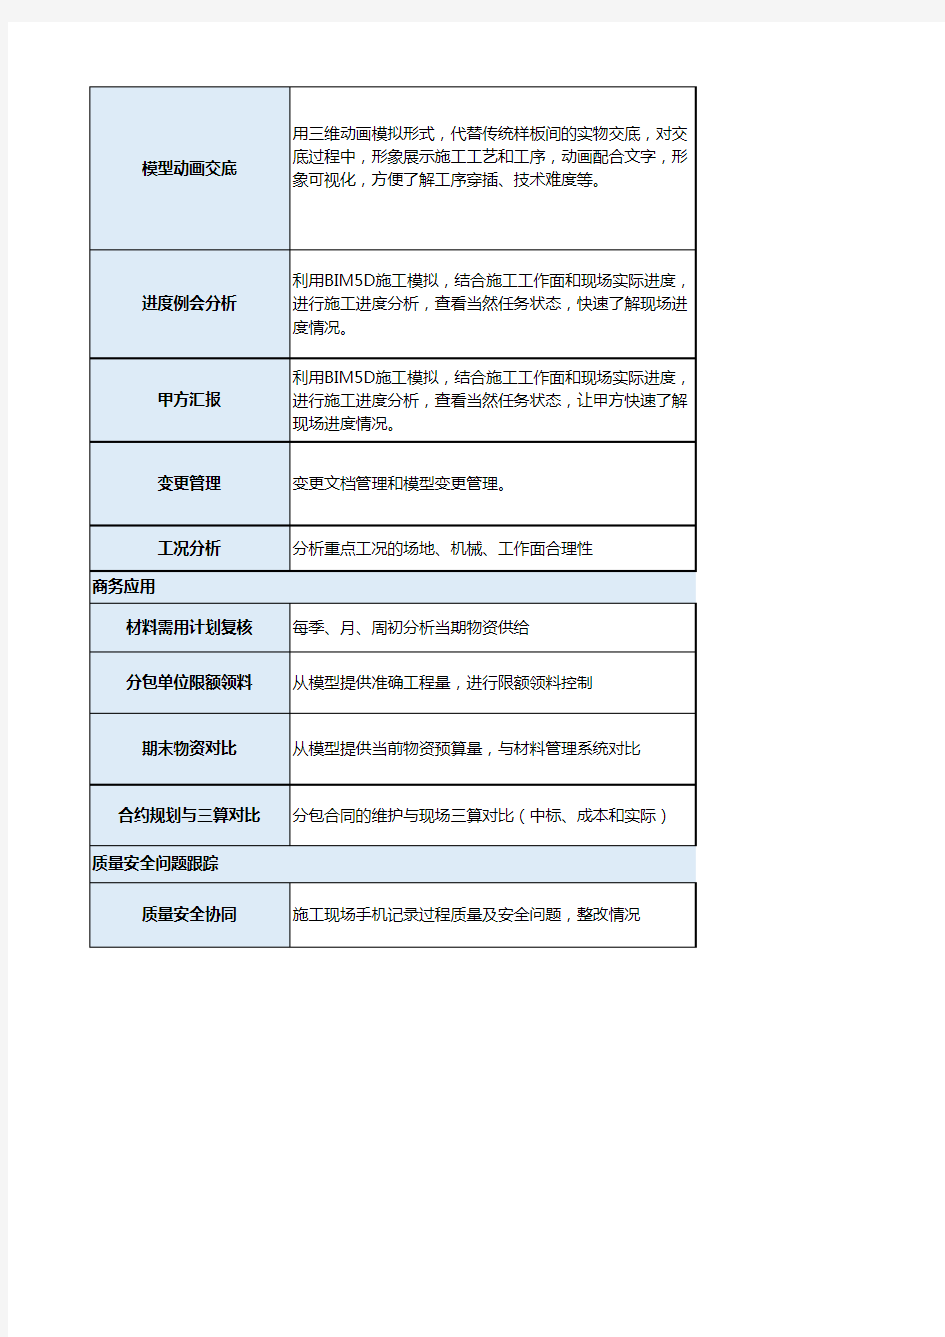 广联达山东大学图书馆项目BIM实施作业文件